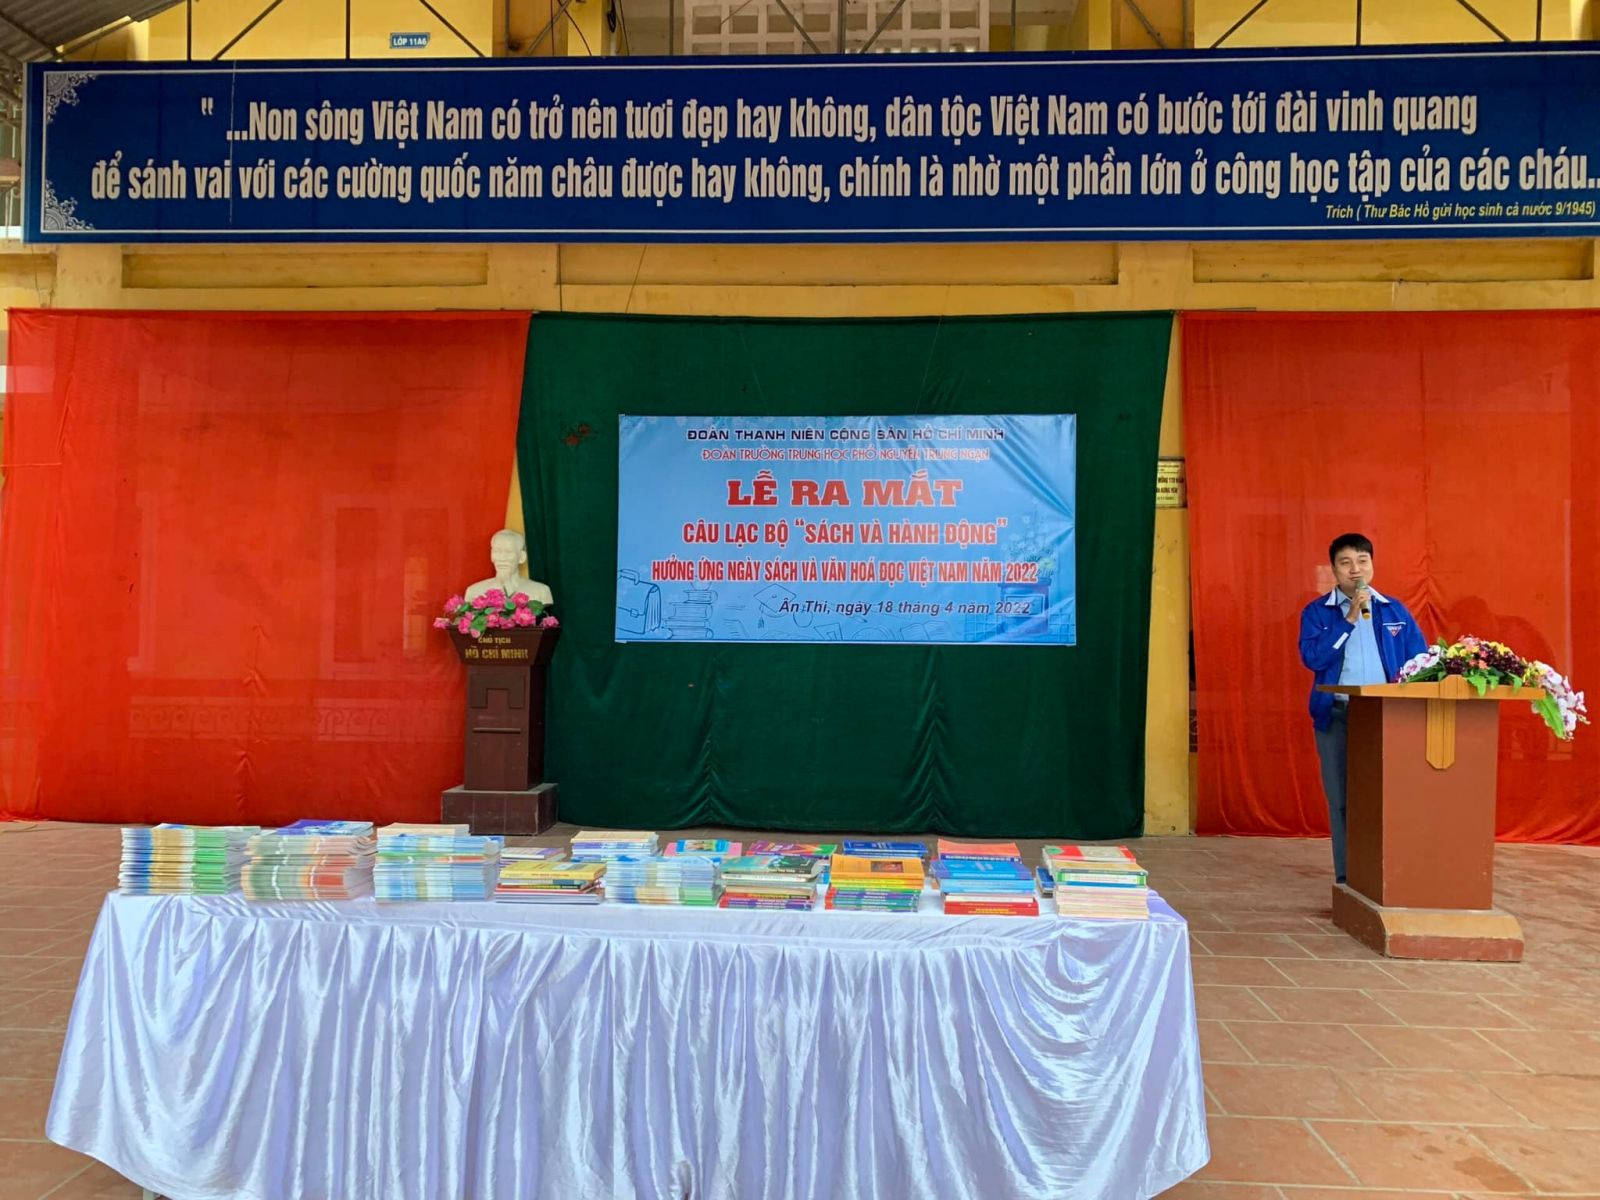 Huyện đoàn Ân Thi tổ chức ra mắt CLB Sách và hành động trường THPT Nguyễn Trung Ngạn